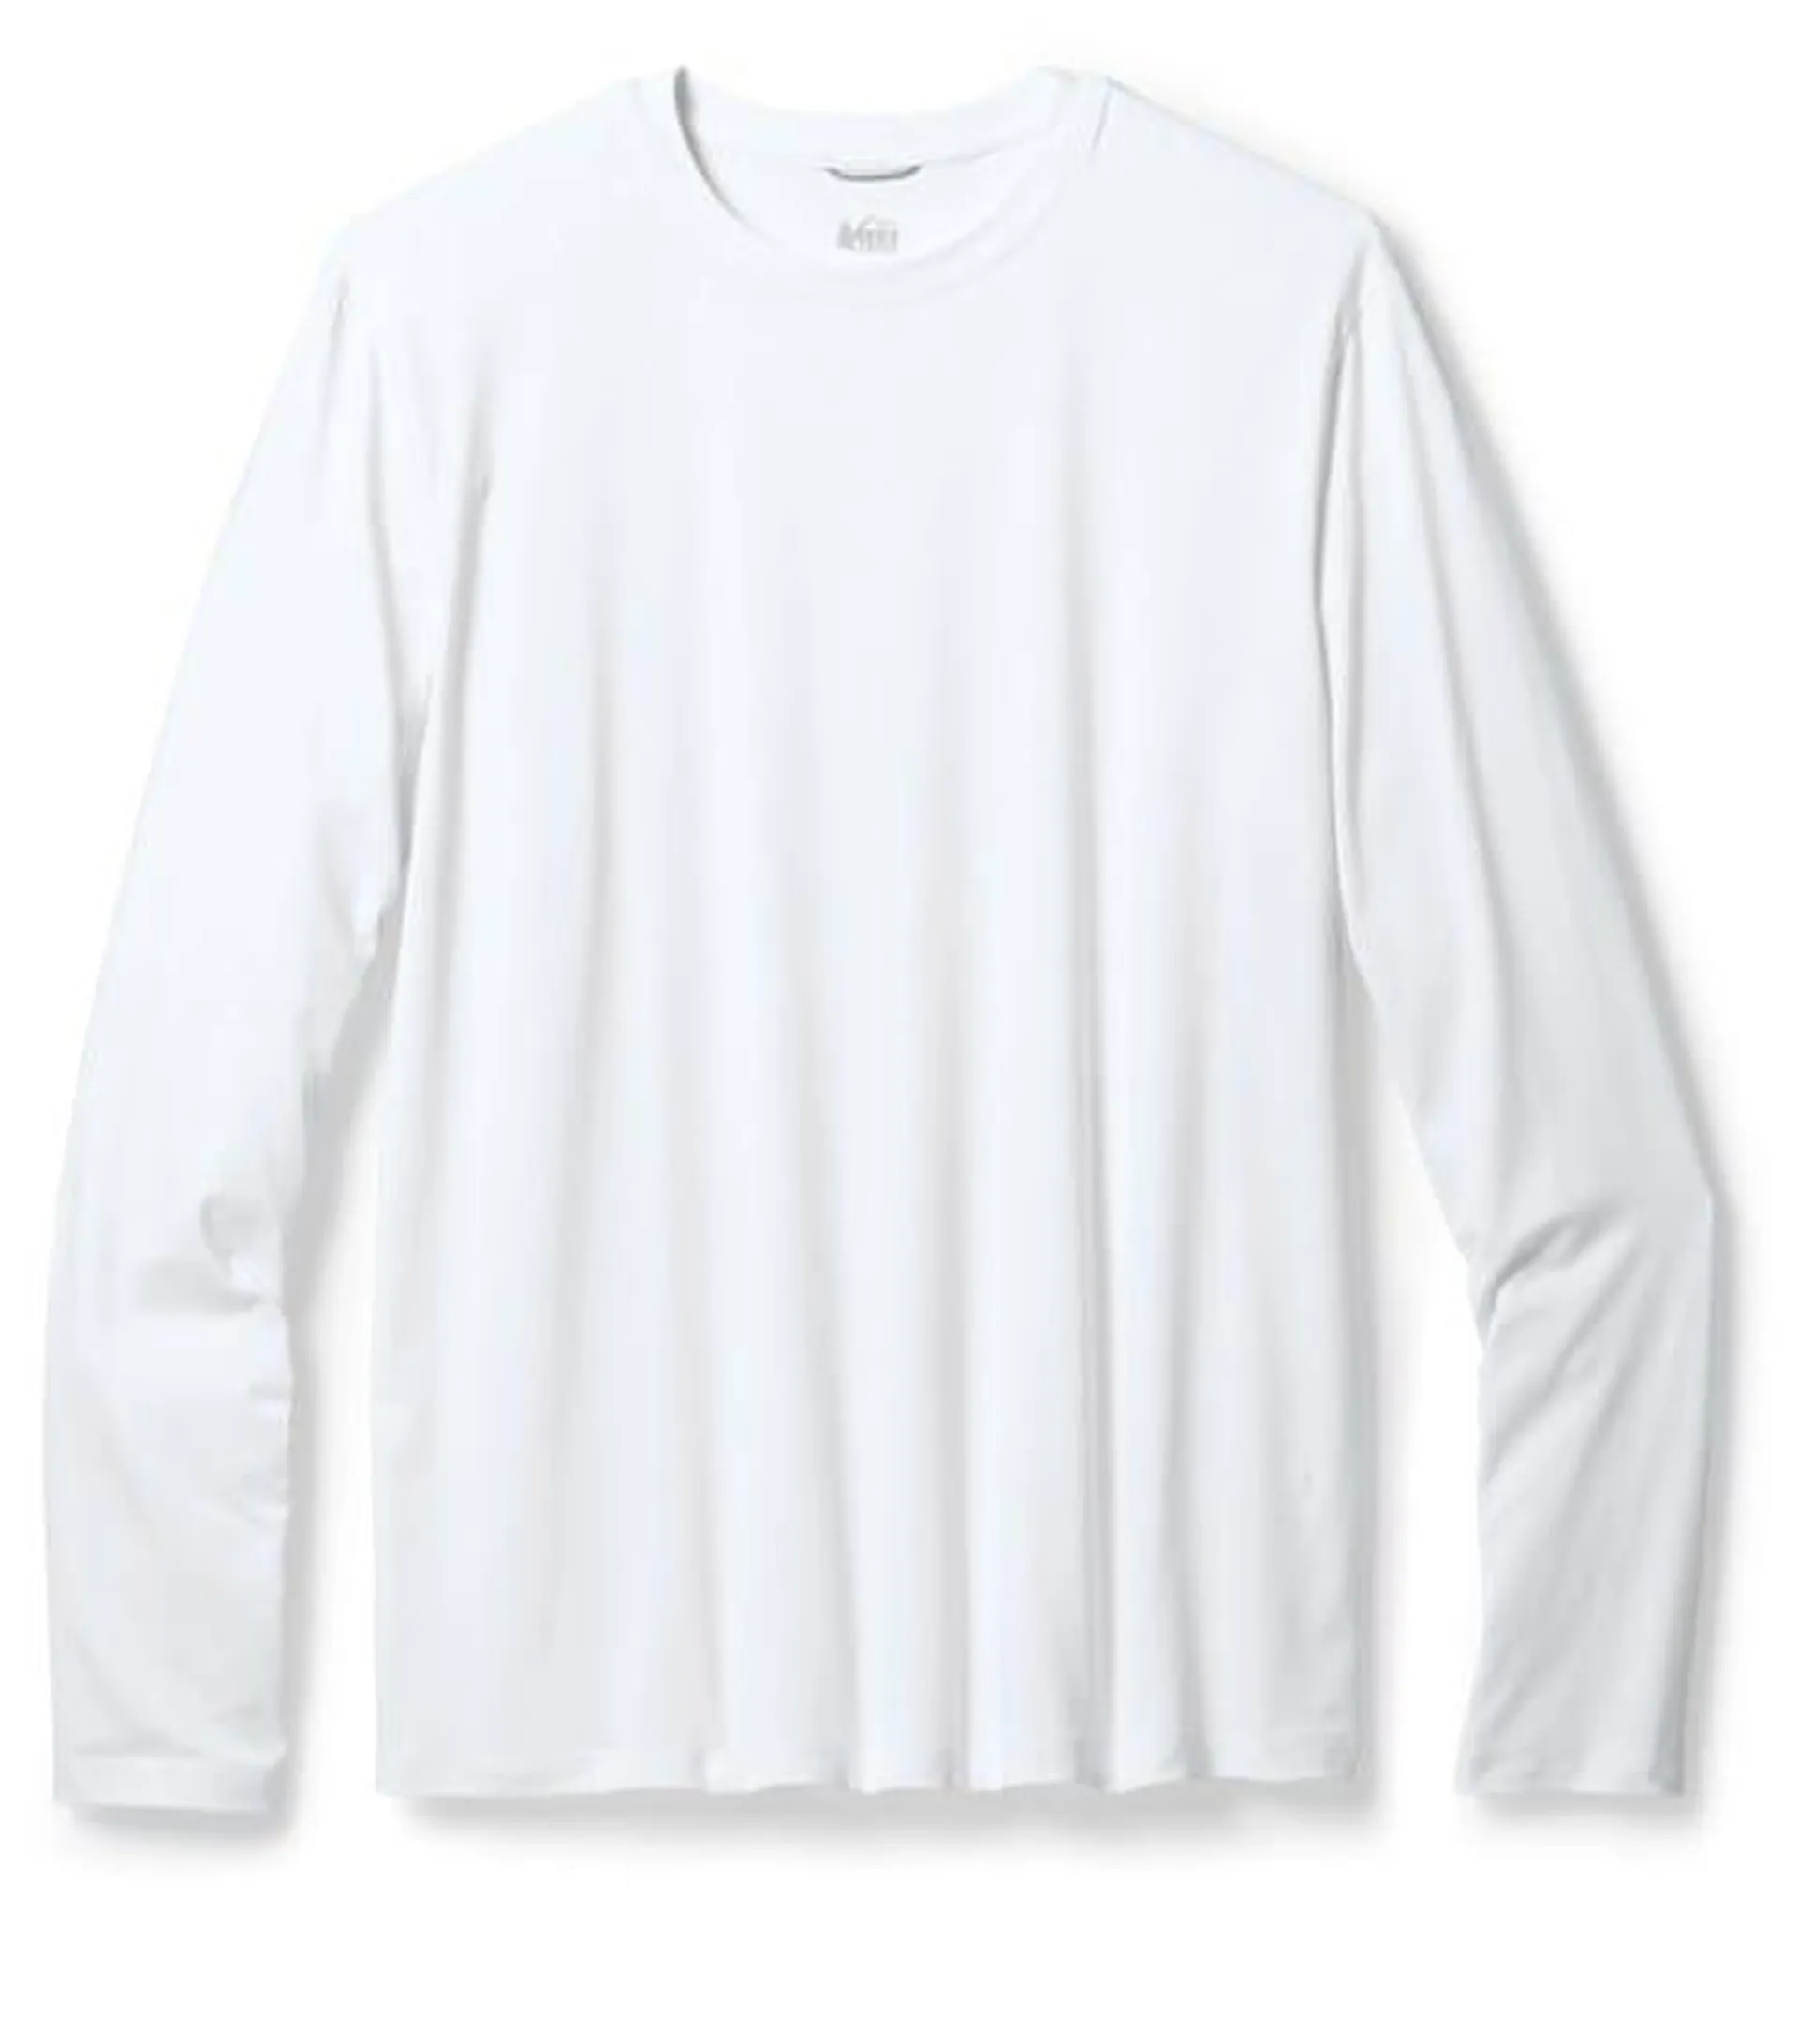 REI Co-op Sahara Long-Sleeve T-Shirt - Men's